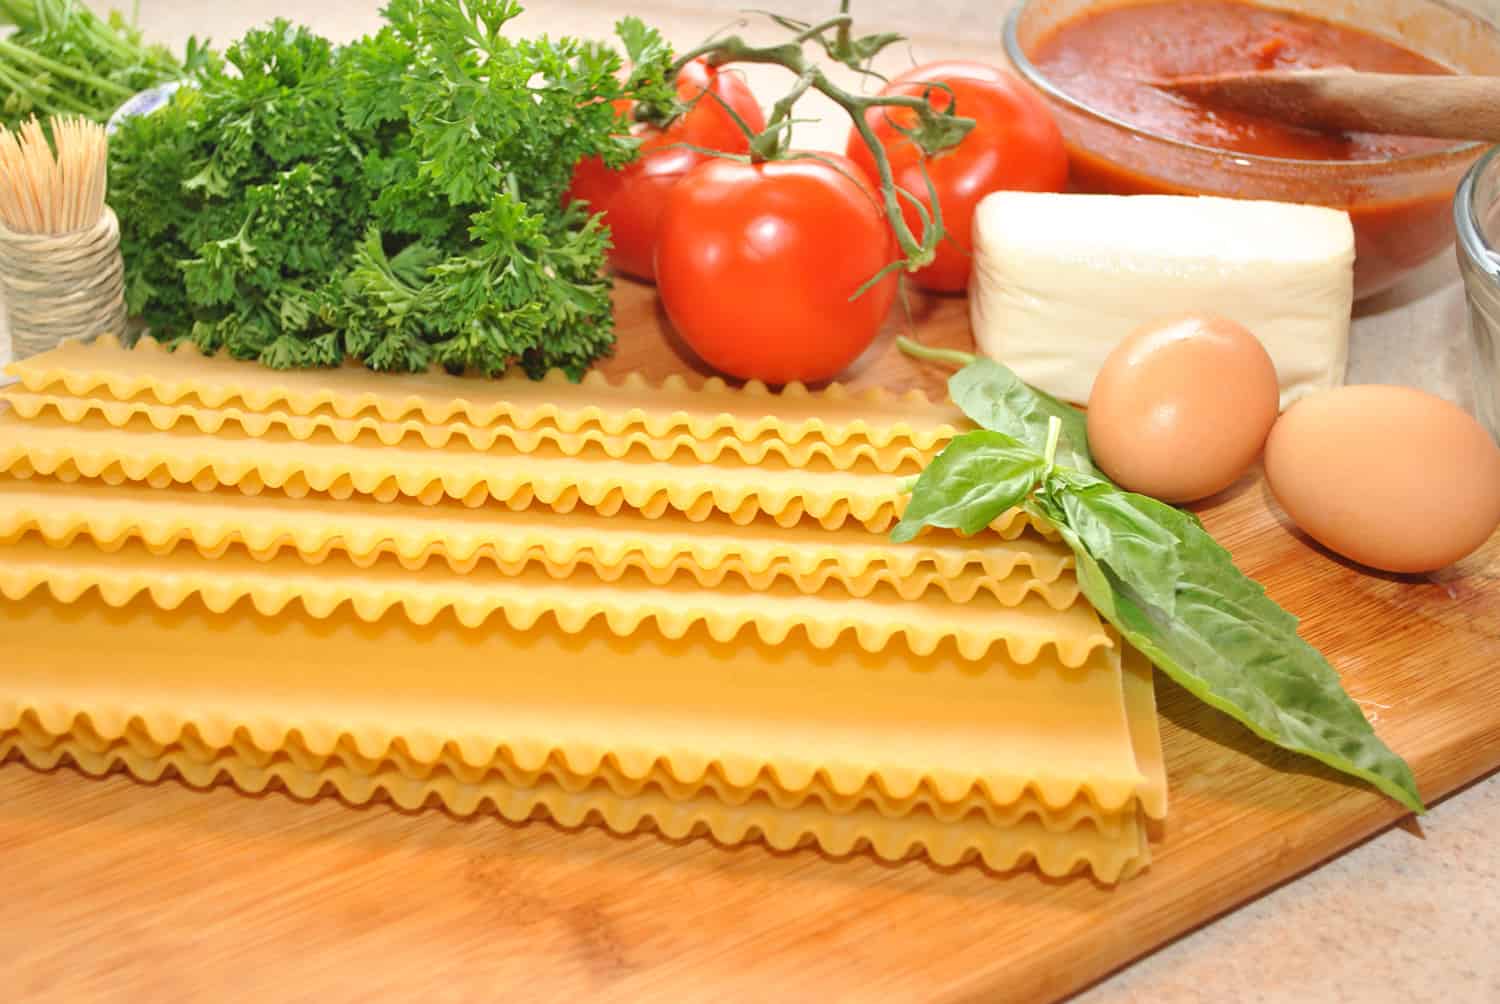 Fresh Ingredients to Make Lasagna